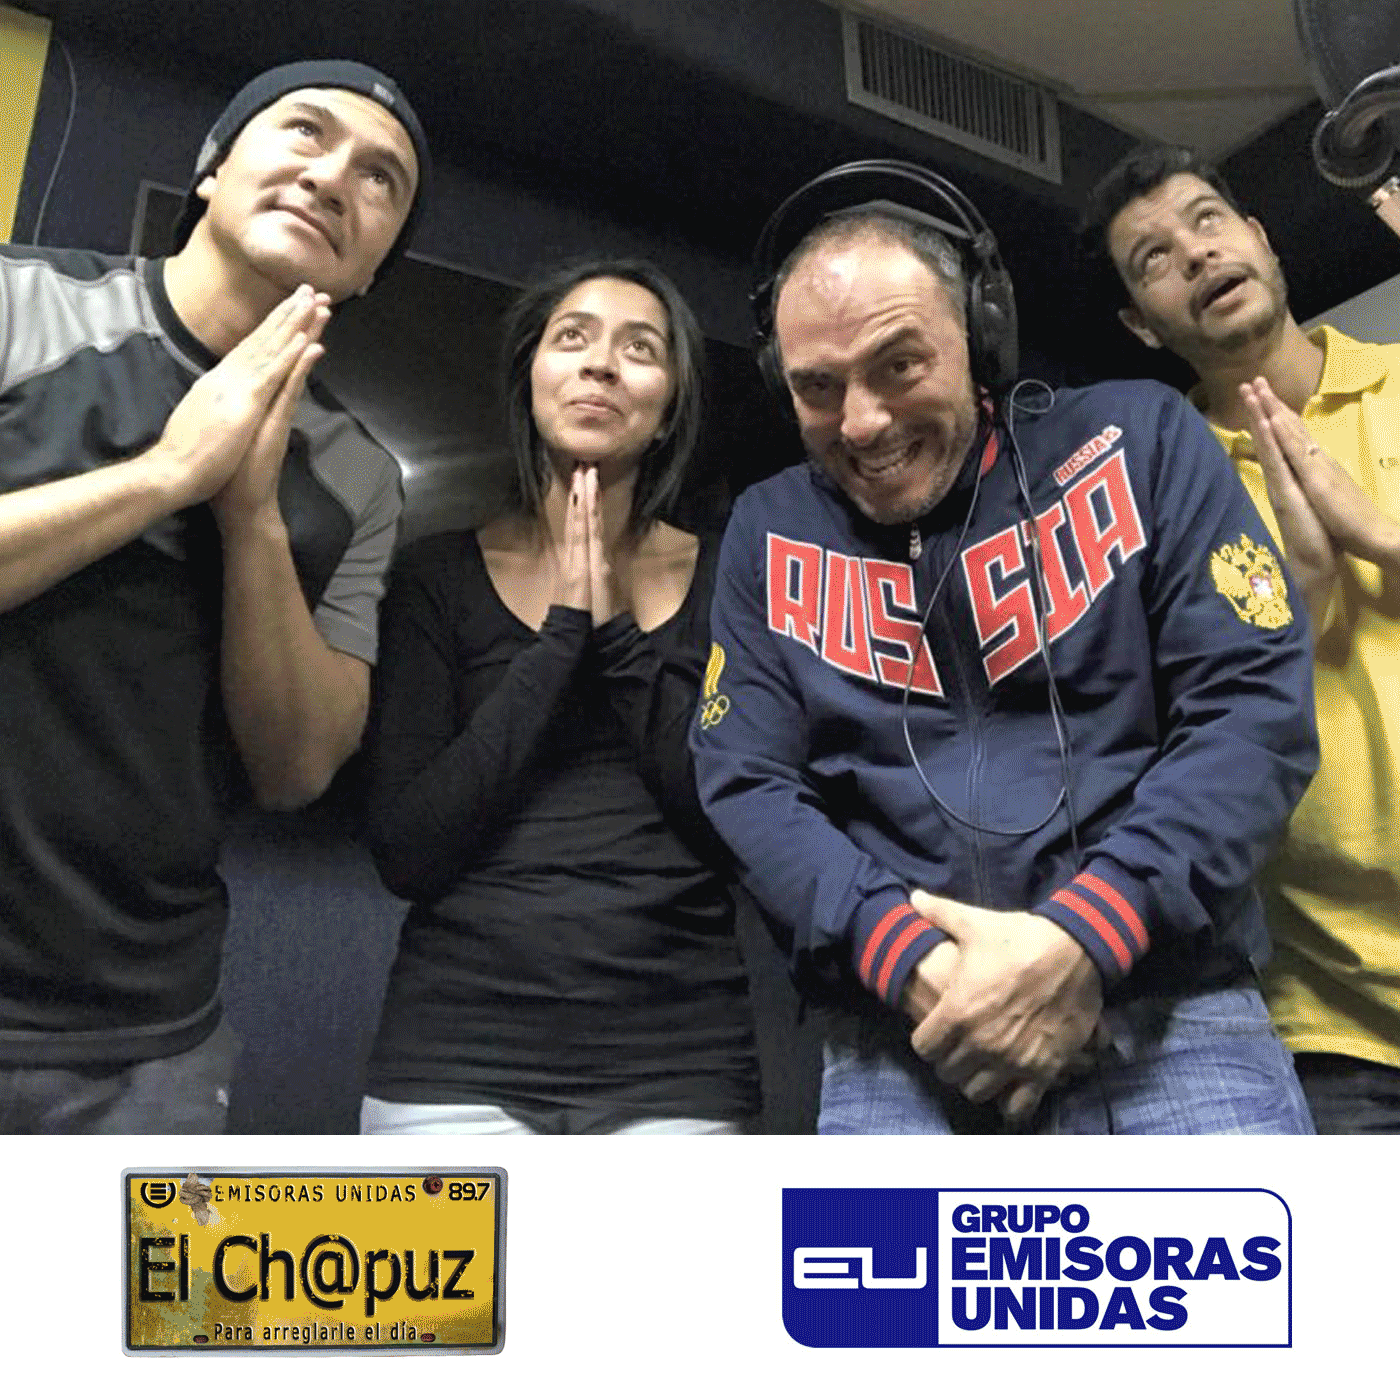 EC41 - El Chapuz - Emisoras unidas - #NotaDeDueloAlemania